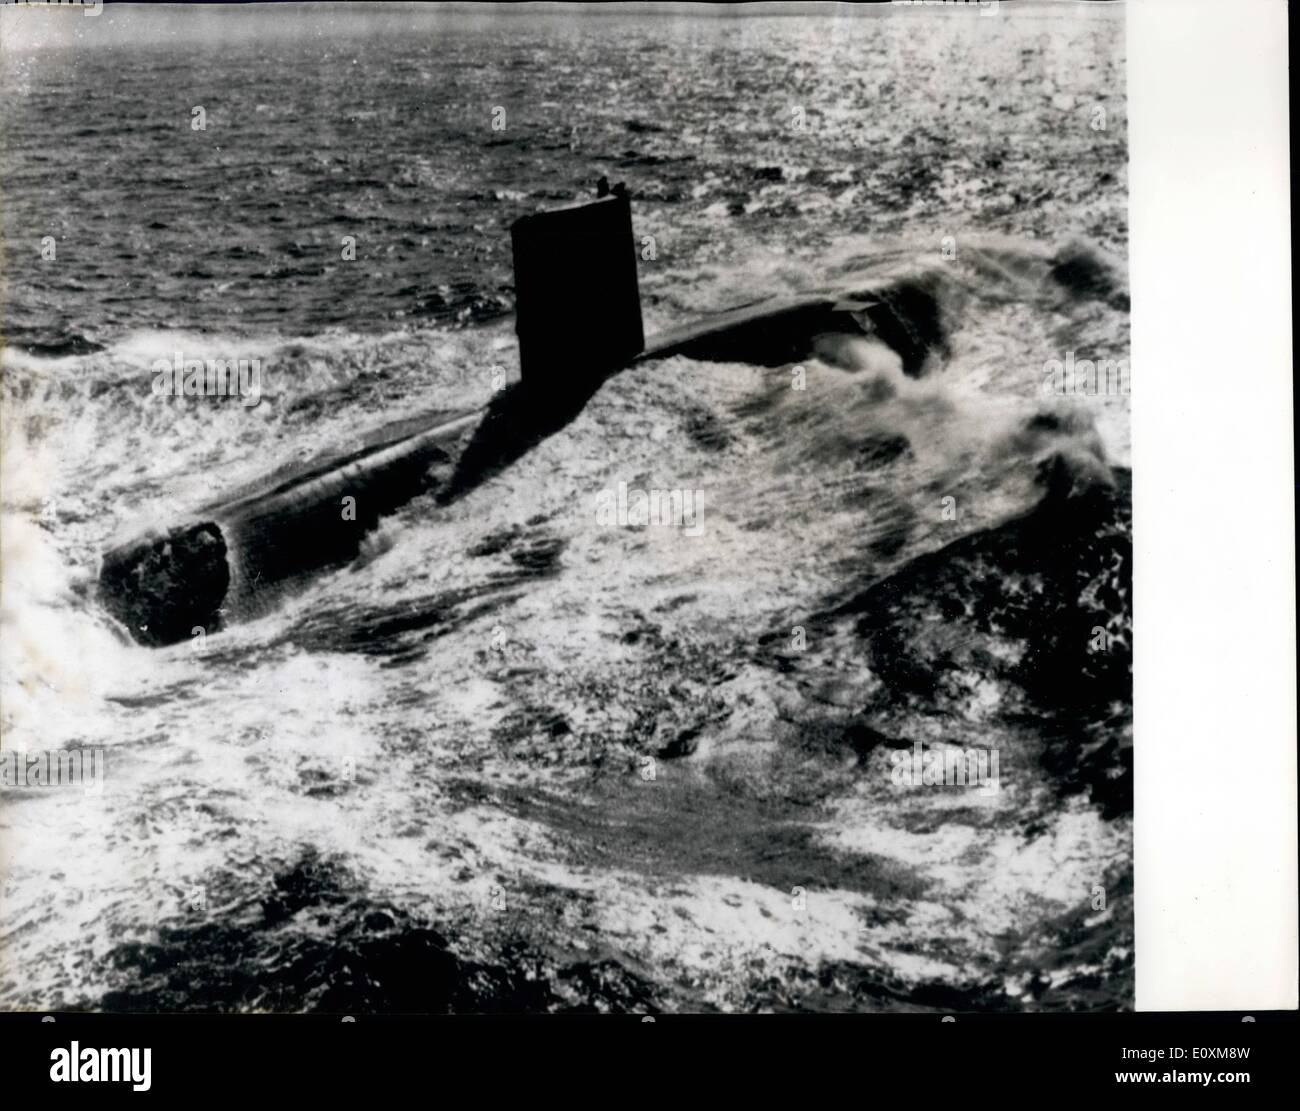 4. April 1967 - nukleare u-Boot Valiant Oberflächen nach Datensatz Reise von Singapur: HMS Valiant (Kommandant Peter Herbert), das Atom-u-Boot (3.500 Tonnen), gezeigt mit Geschwindigkeit nach dem Auftauchen aus Nord-West-Irland, am Ende ihrer 12.000 Meilen Unterwasser Fahrt von Singapur - ein Rekord für eine britische u-Boot. Stockfoto